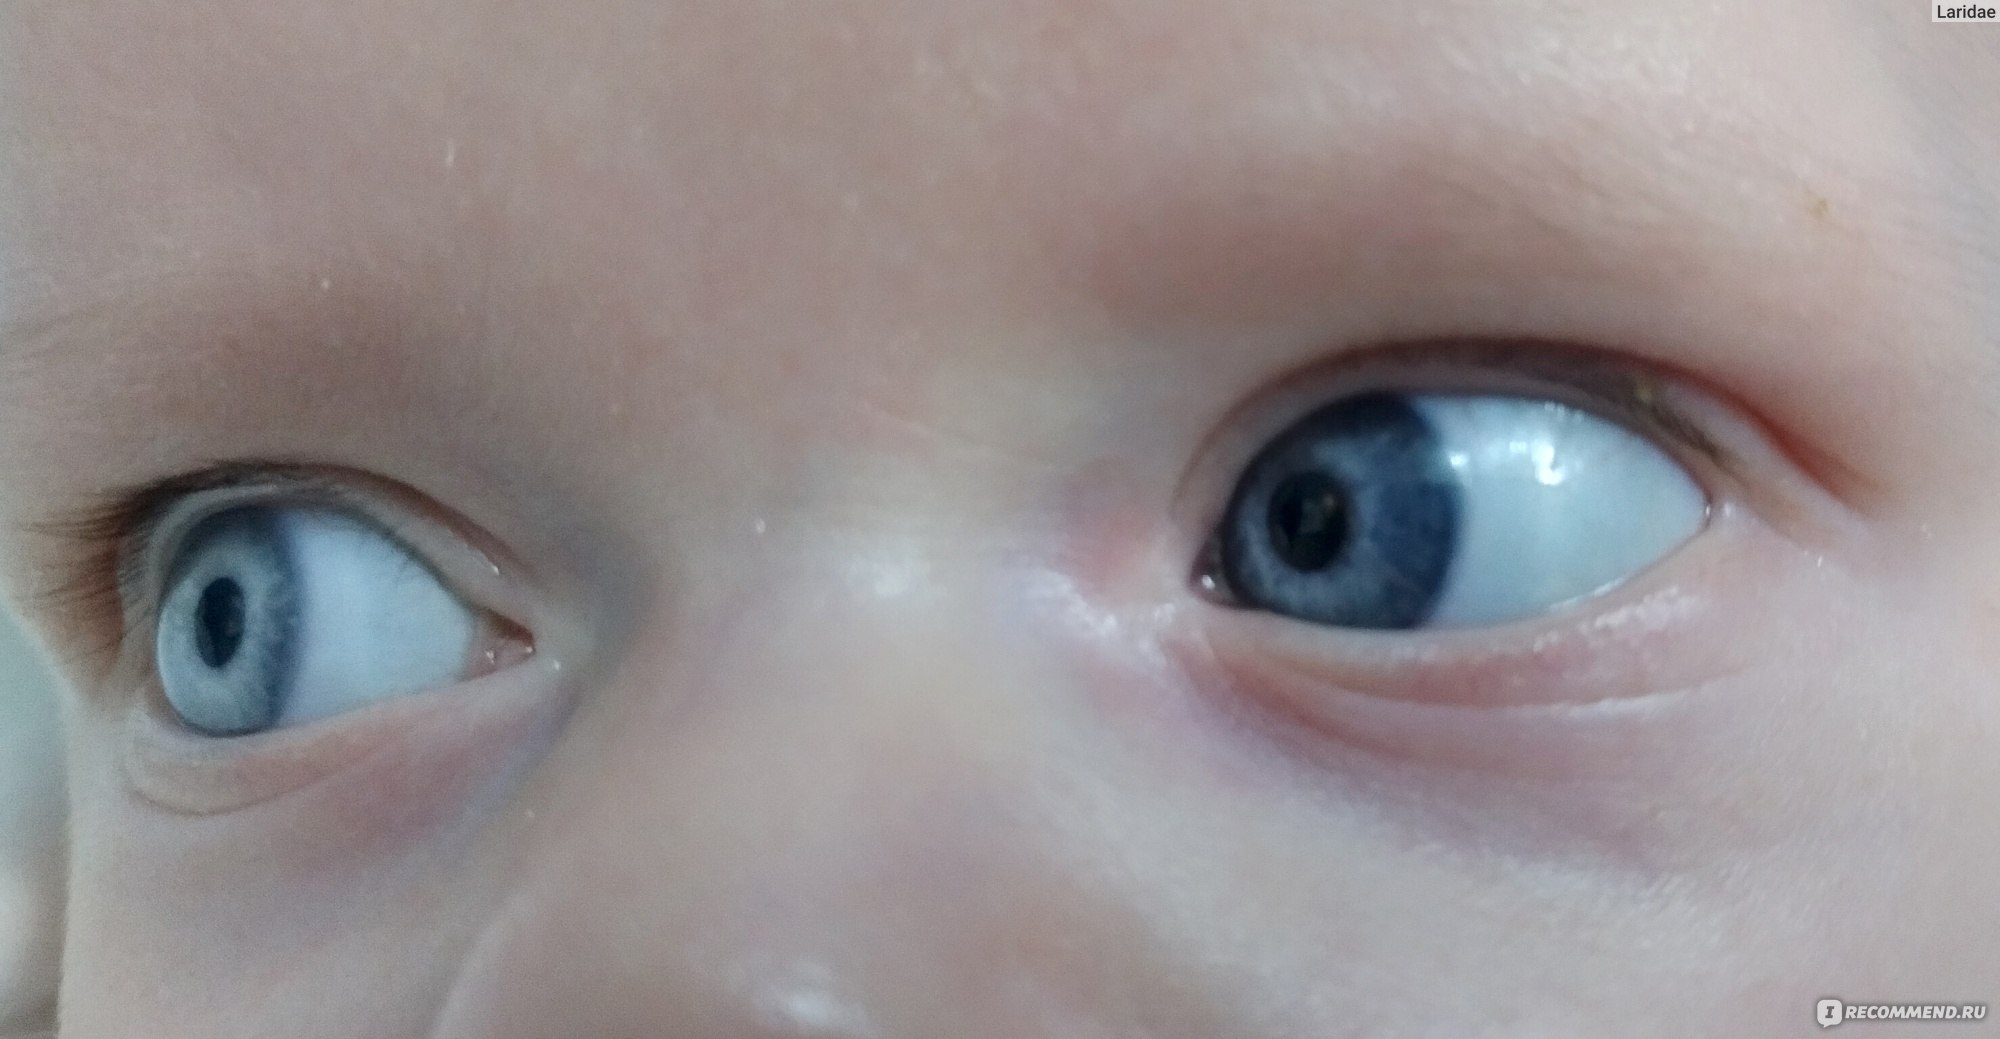 Дакриоцистит капли. Дакриоцистит новорожденных Офтальма. Массаж глаза у новорожденного слезного канала. Дакриоцистит новорожденных тетрациклиновая. Массаж при дакриоцистите новорожденных.